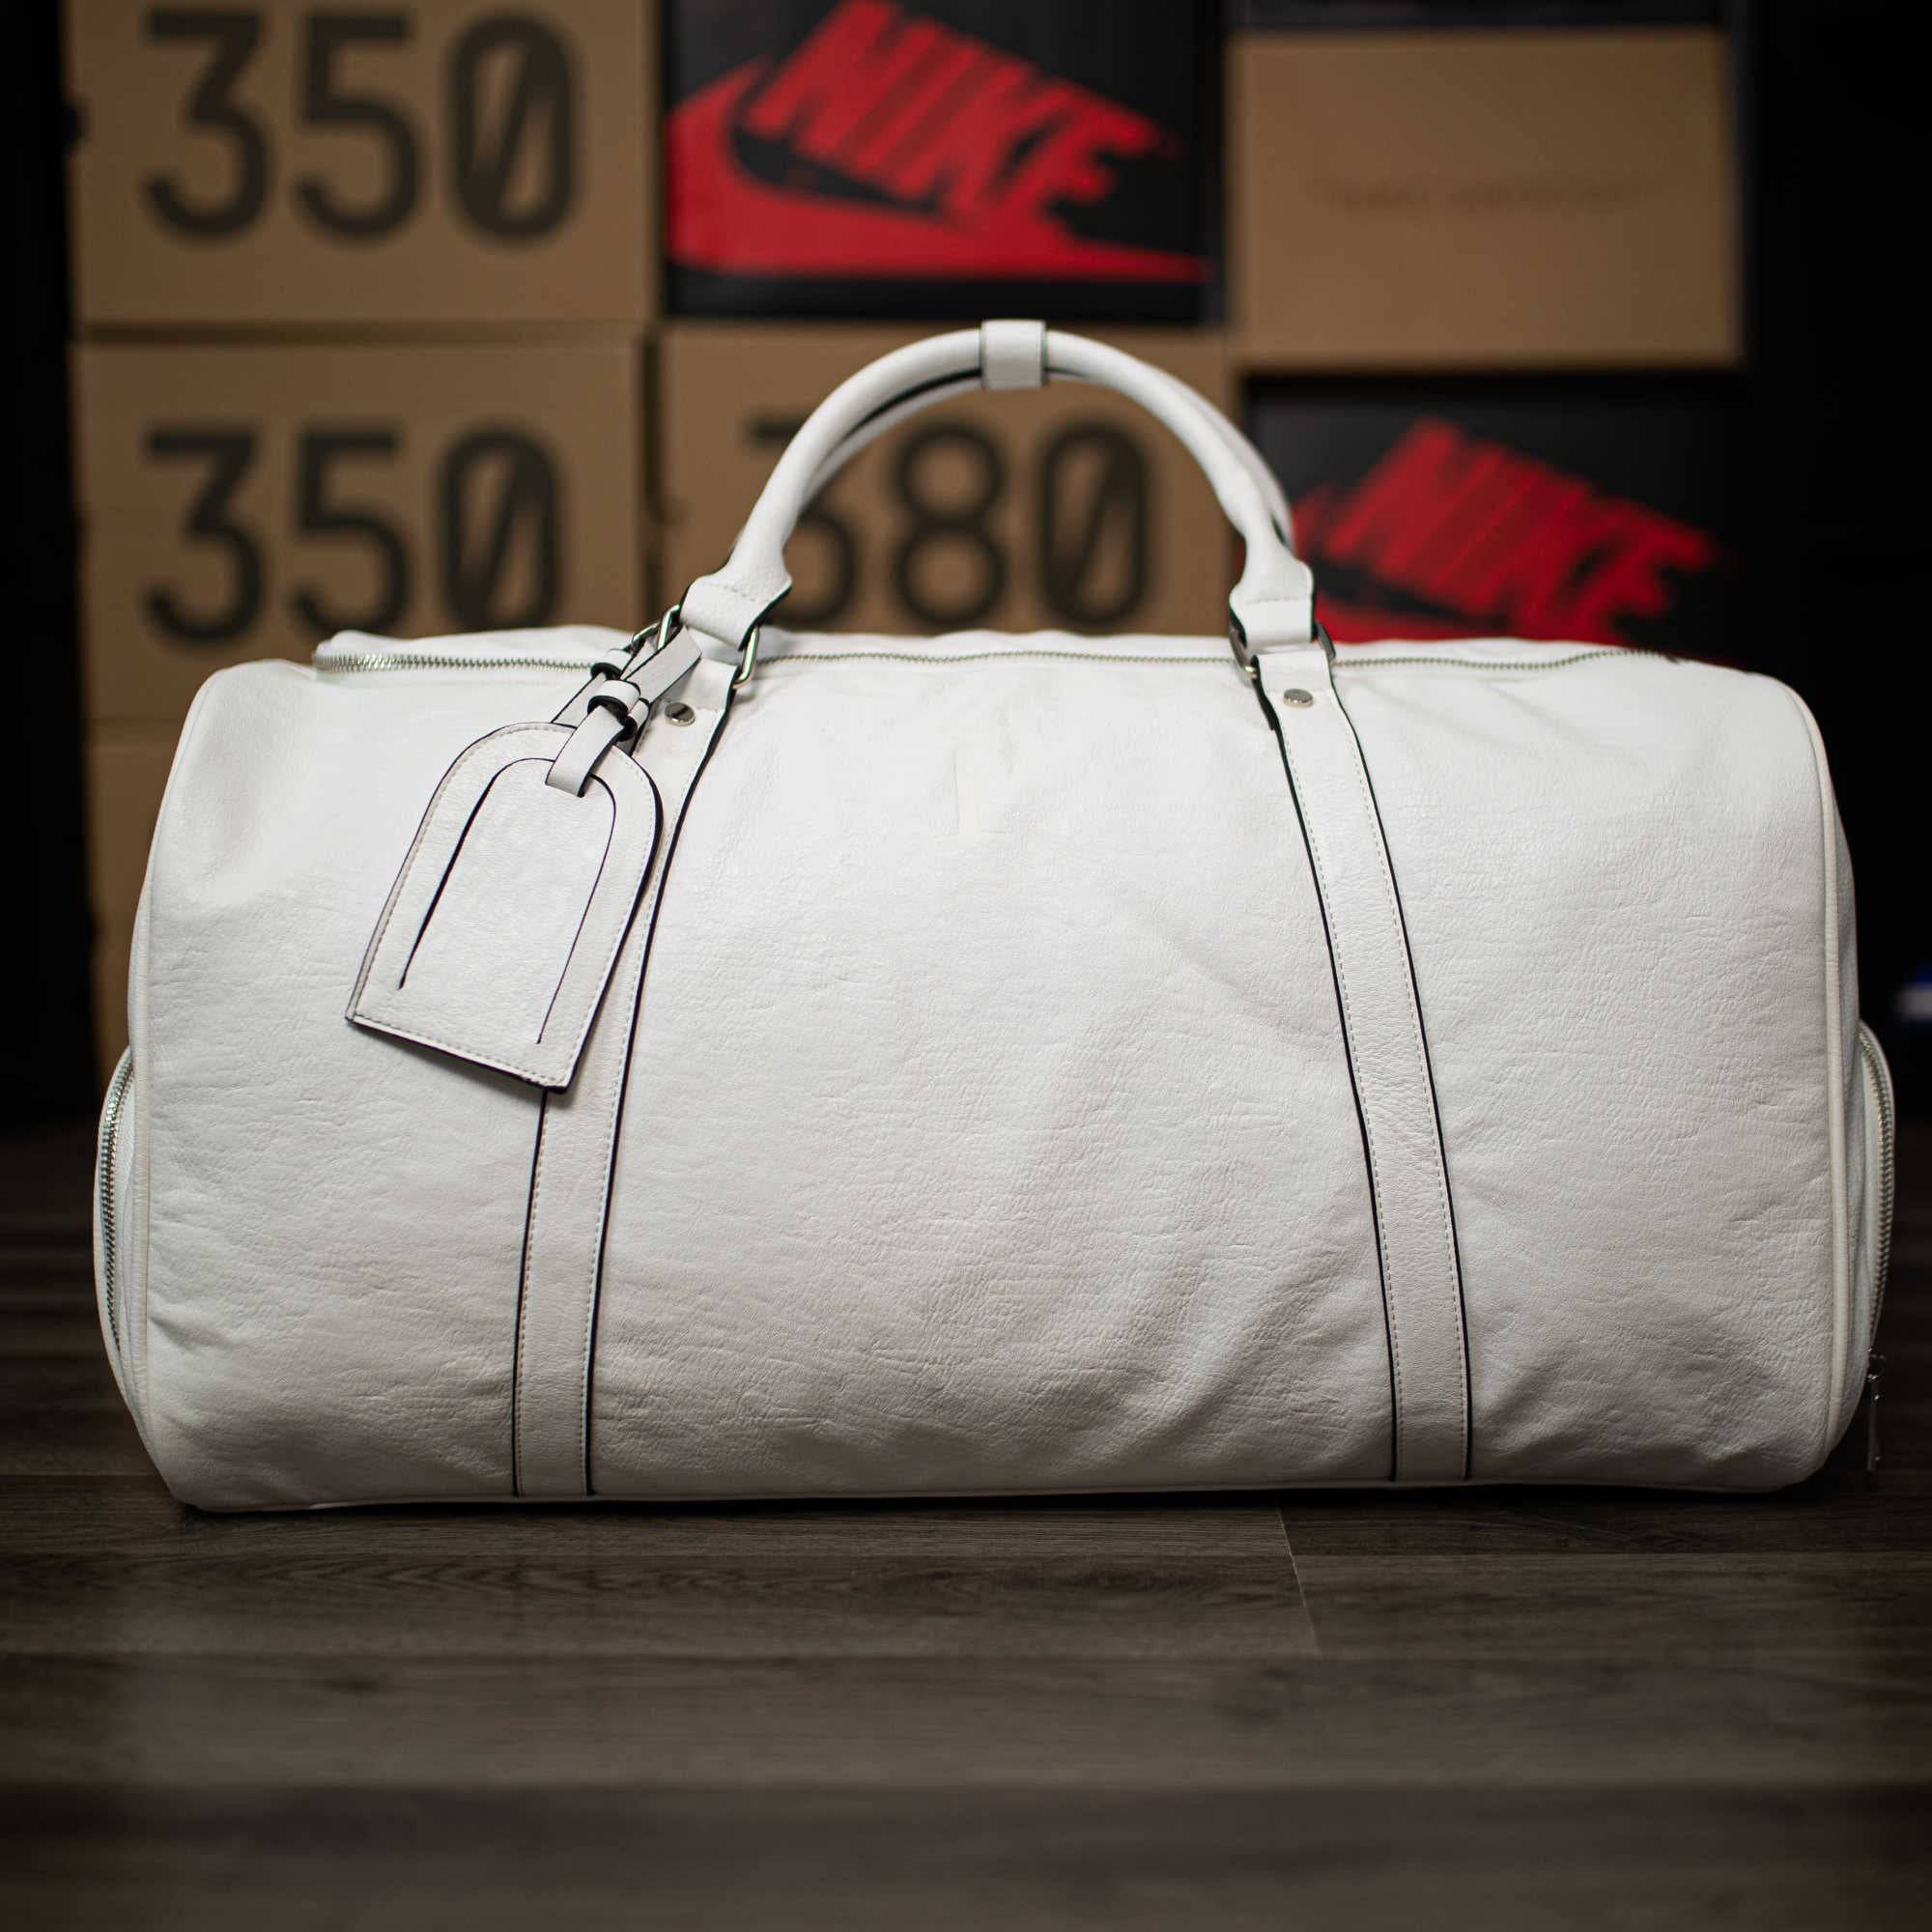 White Tumbled Leather Signature Bag Set (Signature and Duffle Bag) - Sole Premise